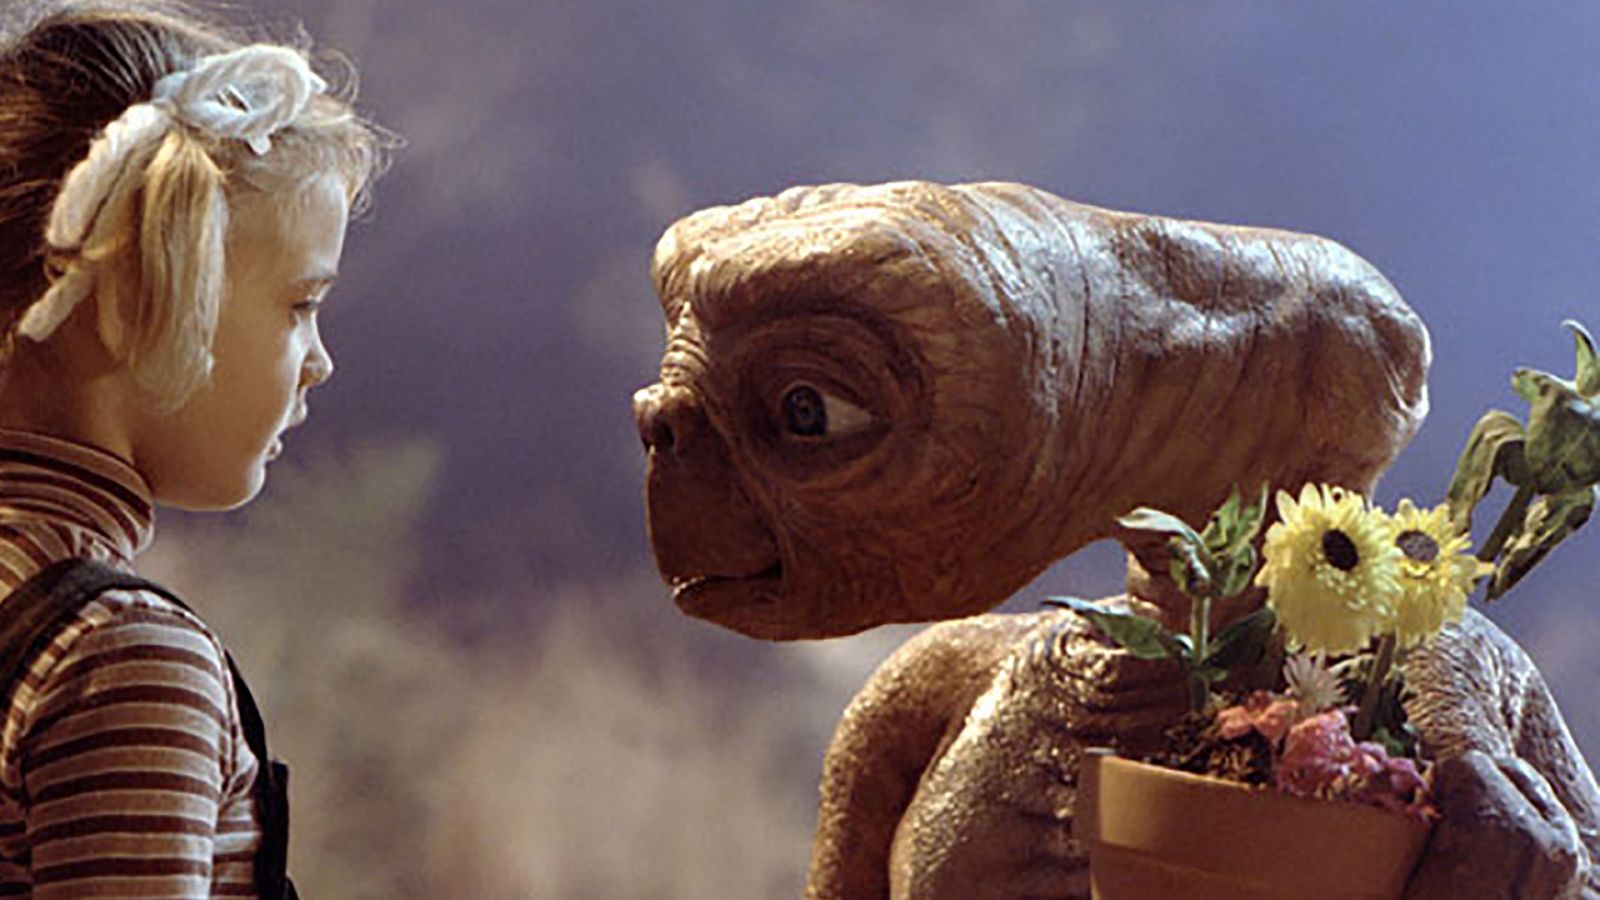 Películas como 'E.T., el extraterrestre' nos influyen a la hora de representar a los extraterrestres.